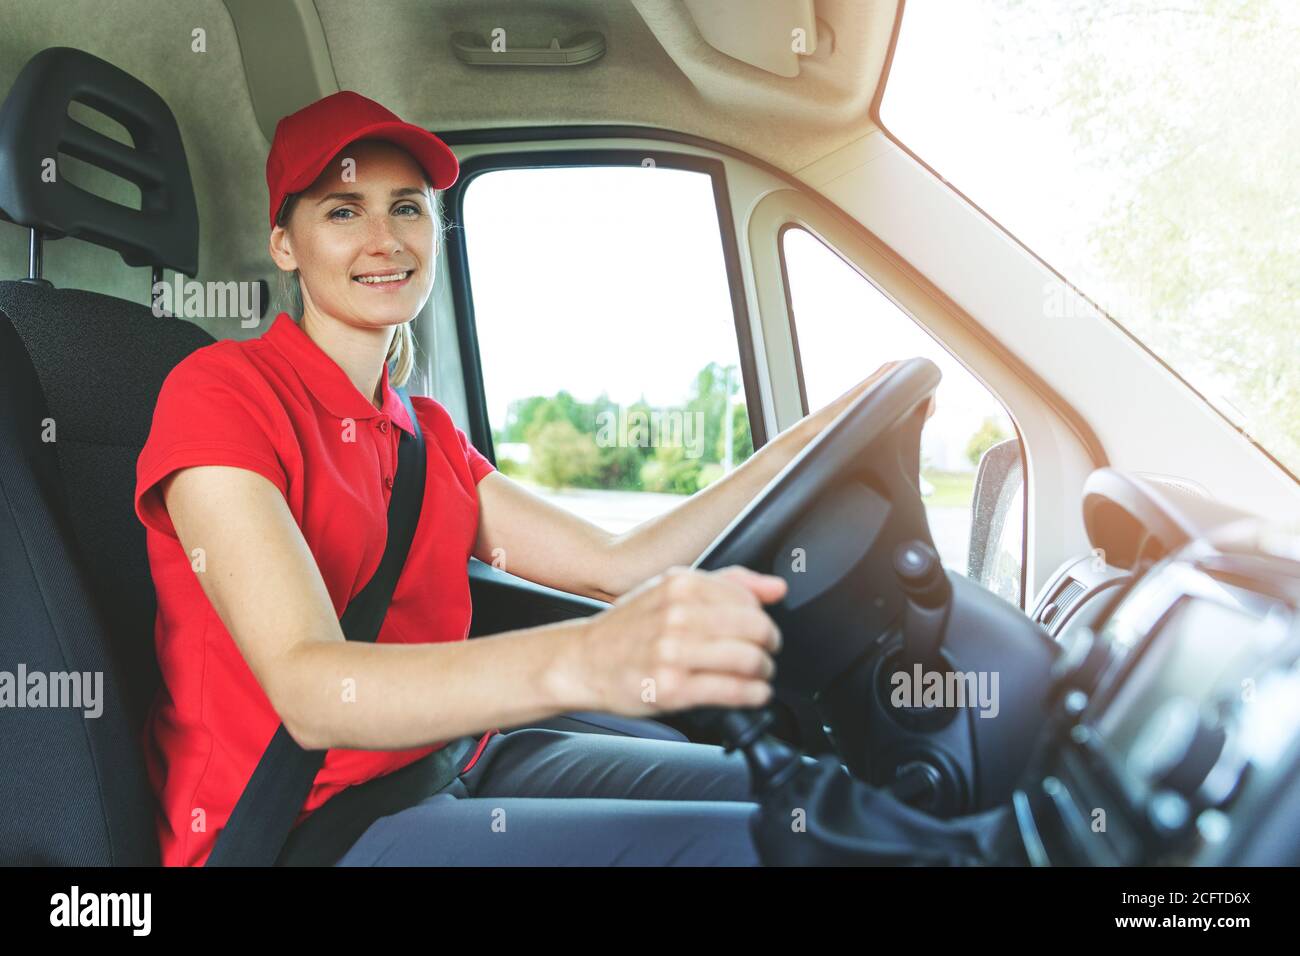 services de transport - jeune femme chauffeur en uniforme rouge conduisant une camionnette. souriant à la caméra Banque D'Images